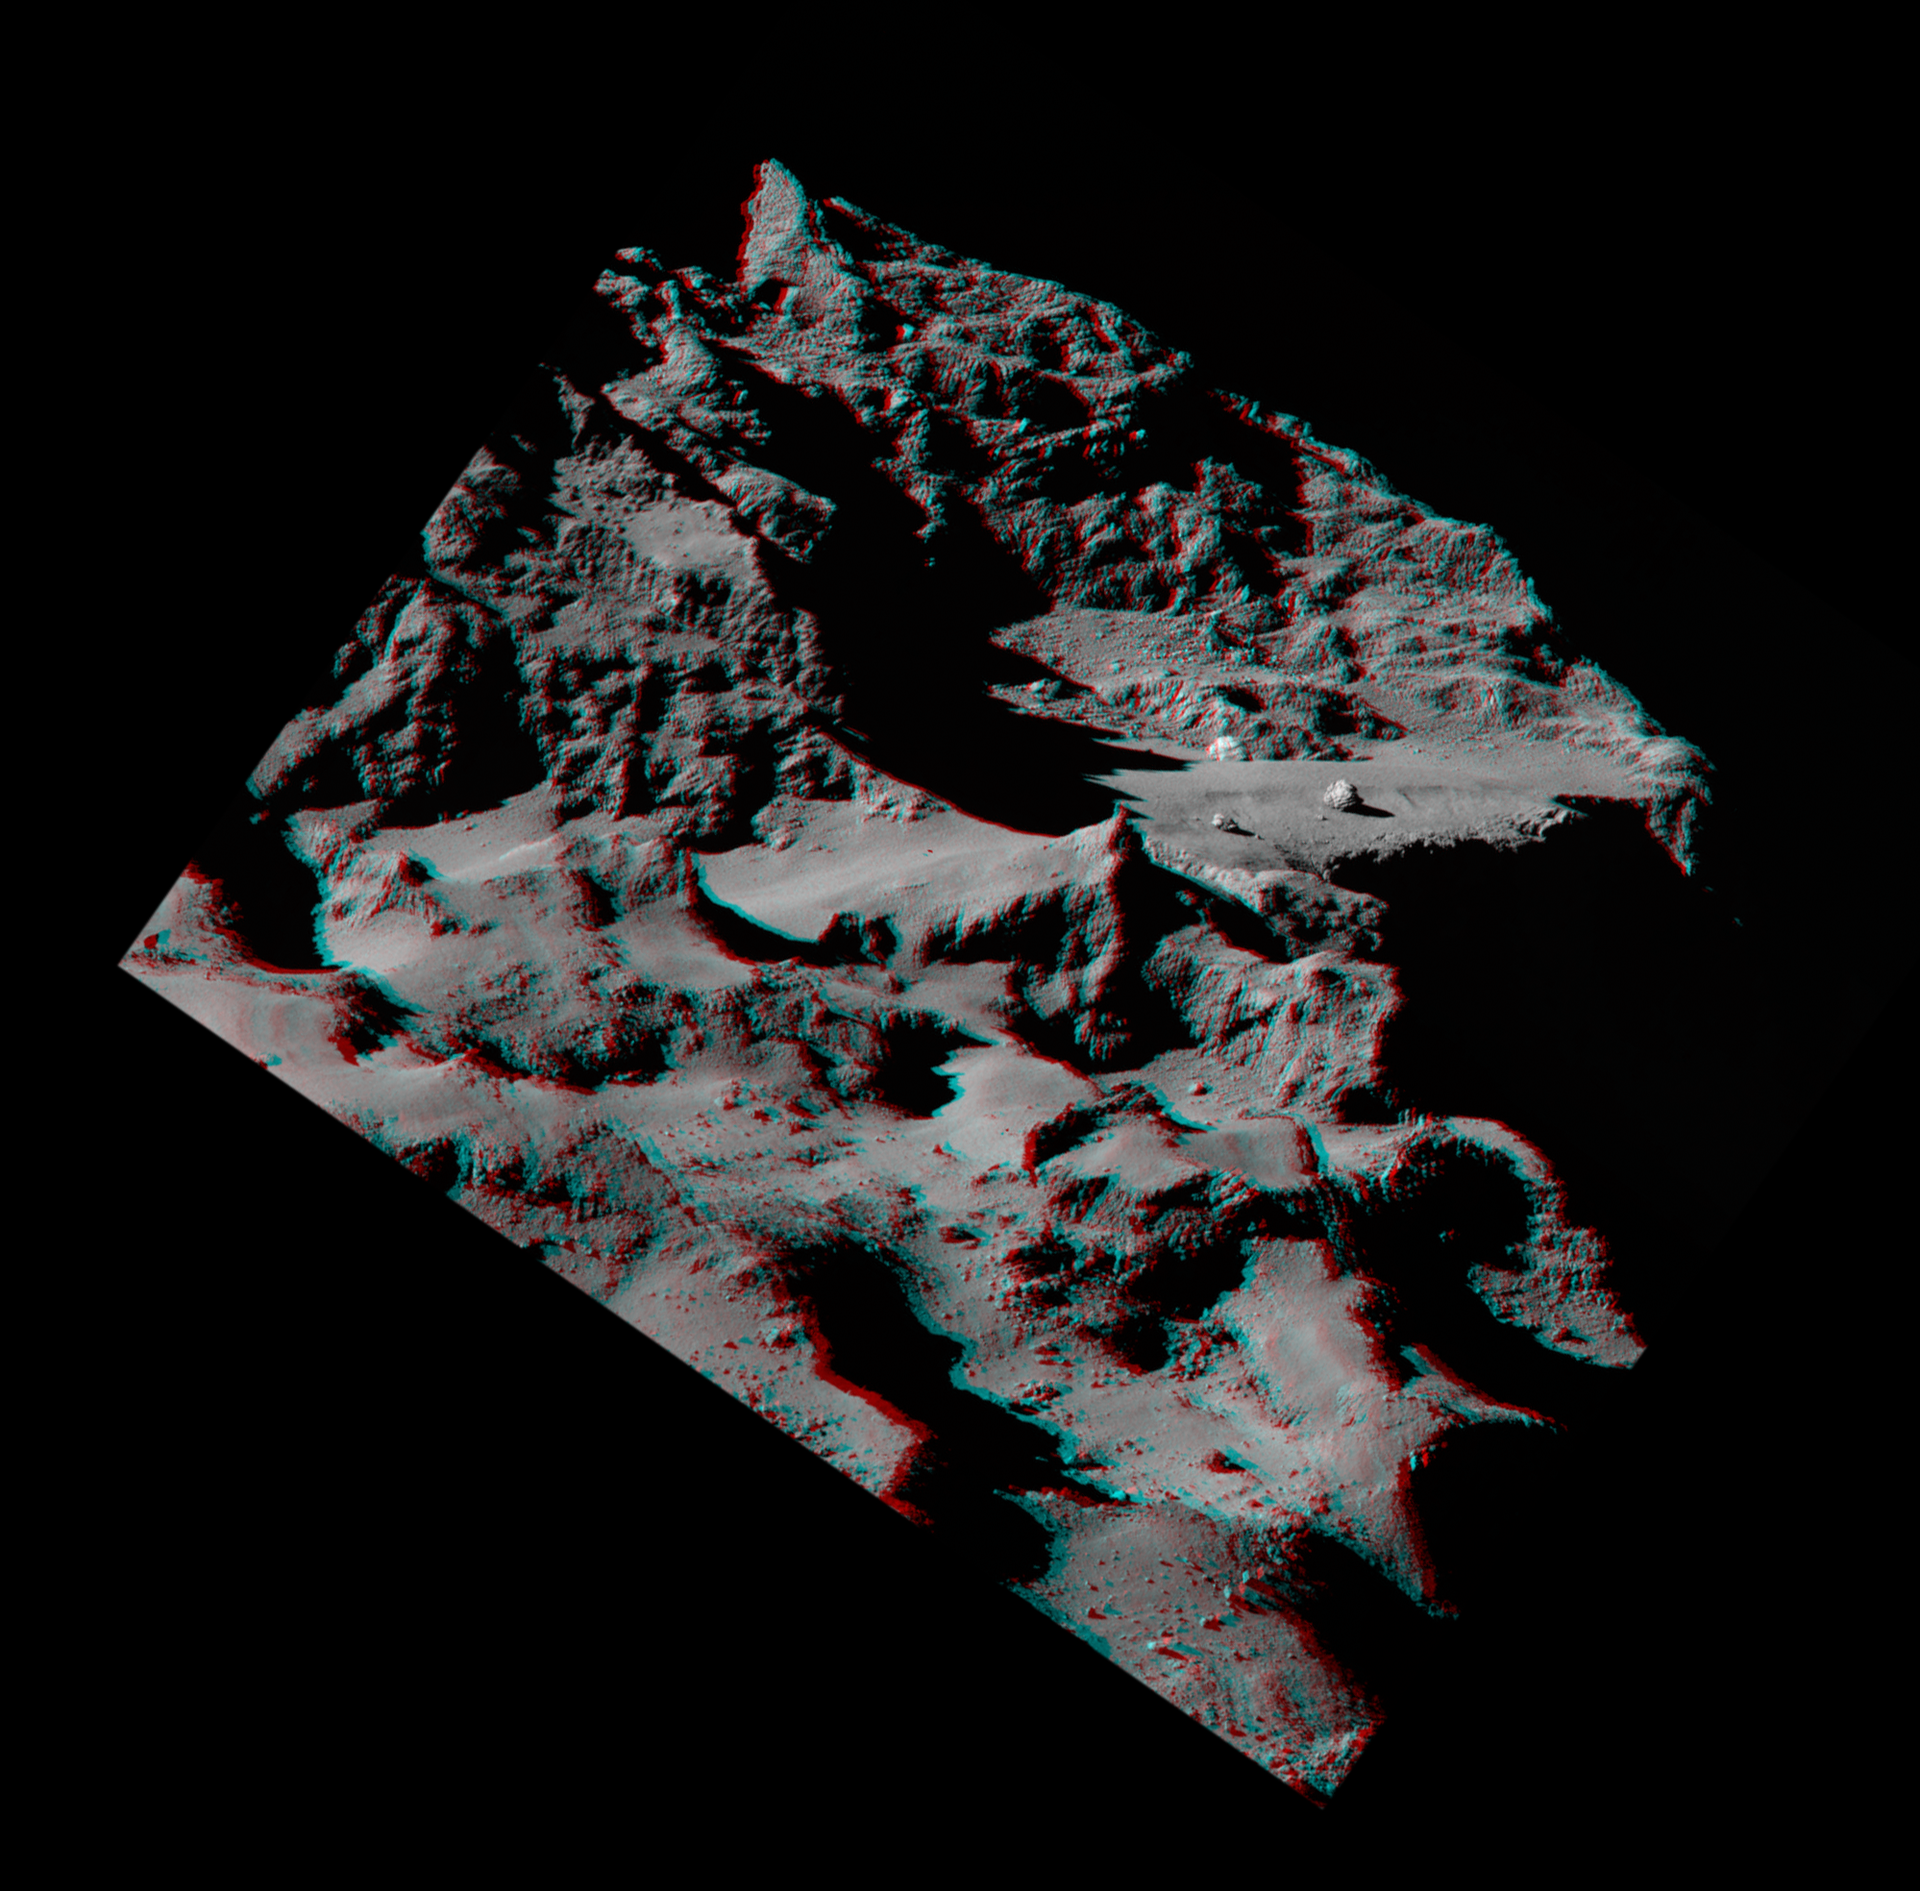 Comet cliff in 3D